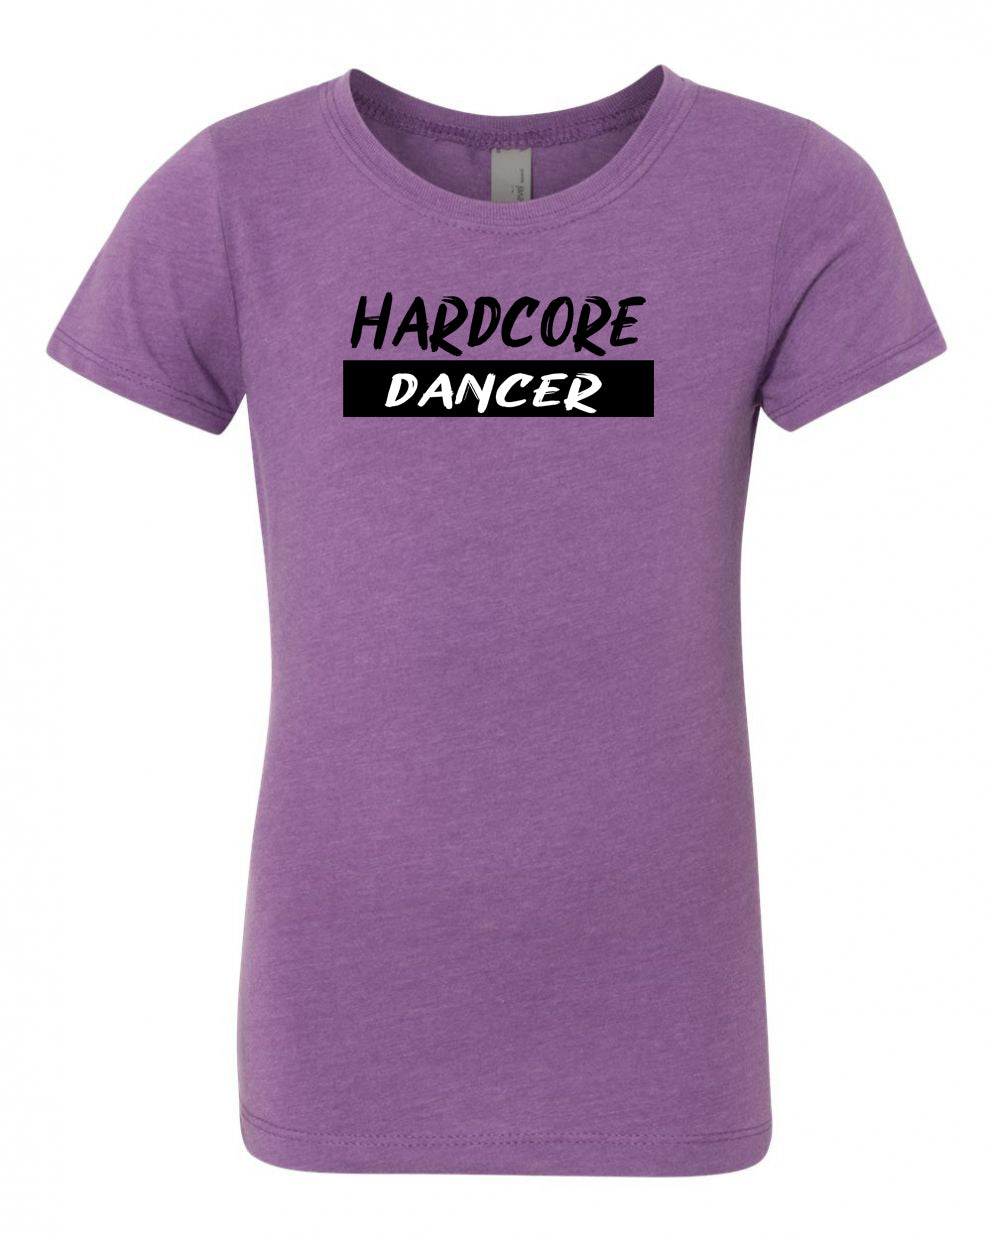 Hardcore Dancer Girls T-Shirt Purple Berry